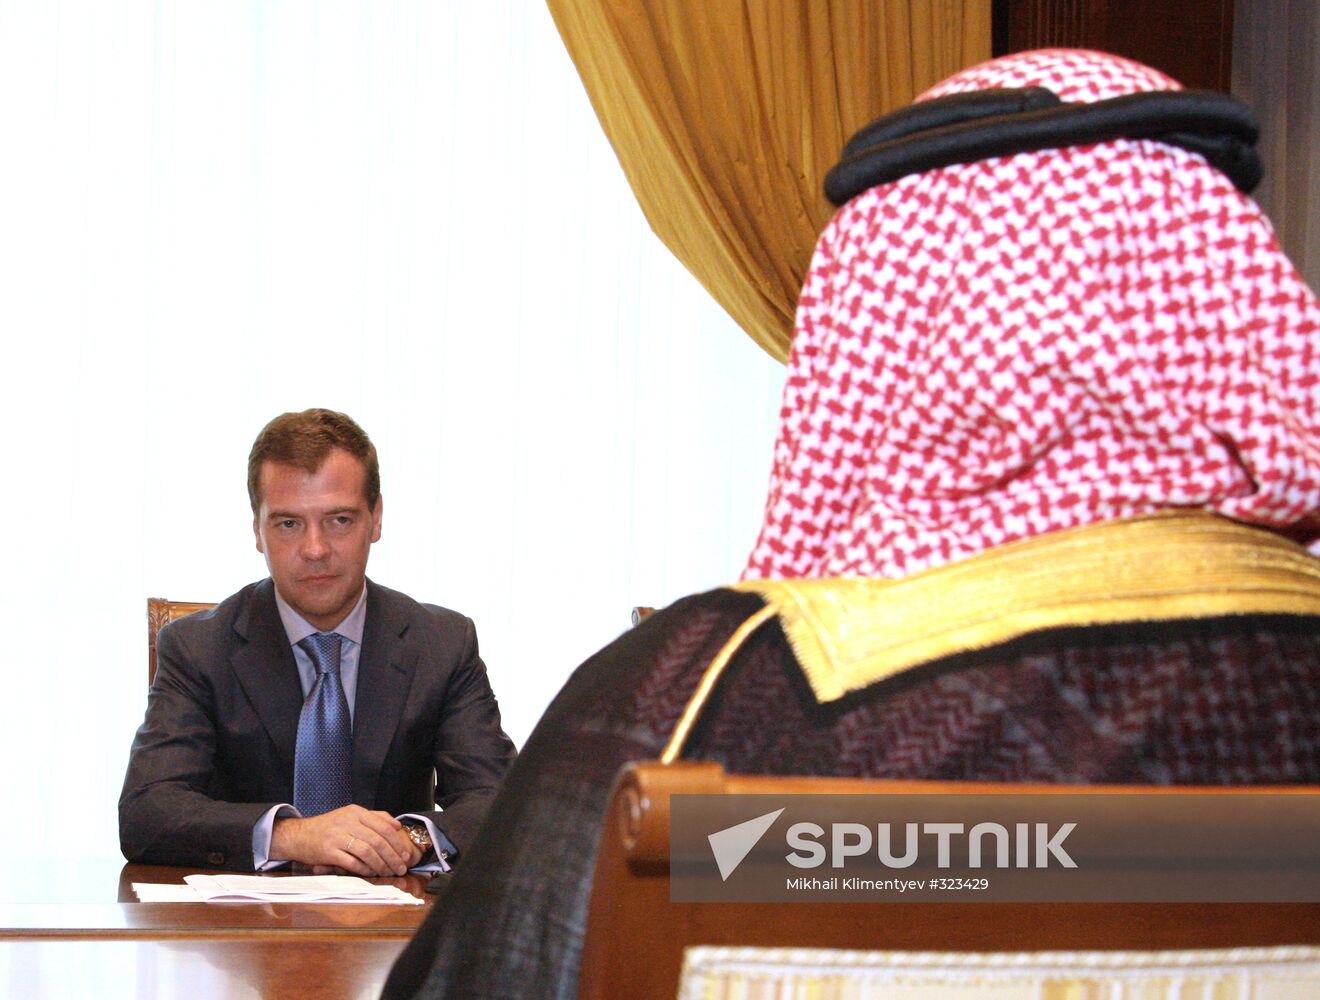 Dmitry Medvedev and Prince Bandar of Saudi Arabia